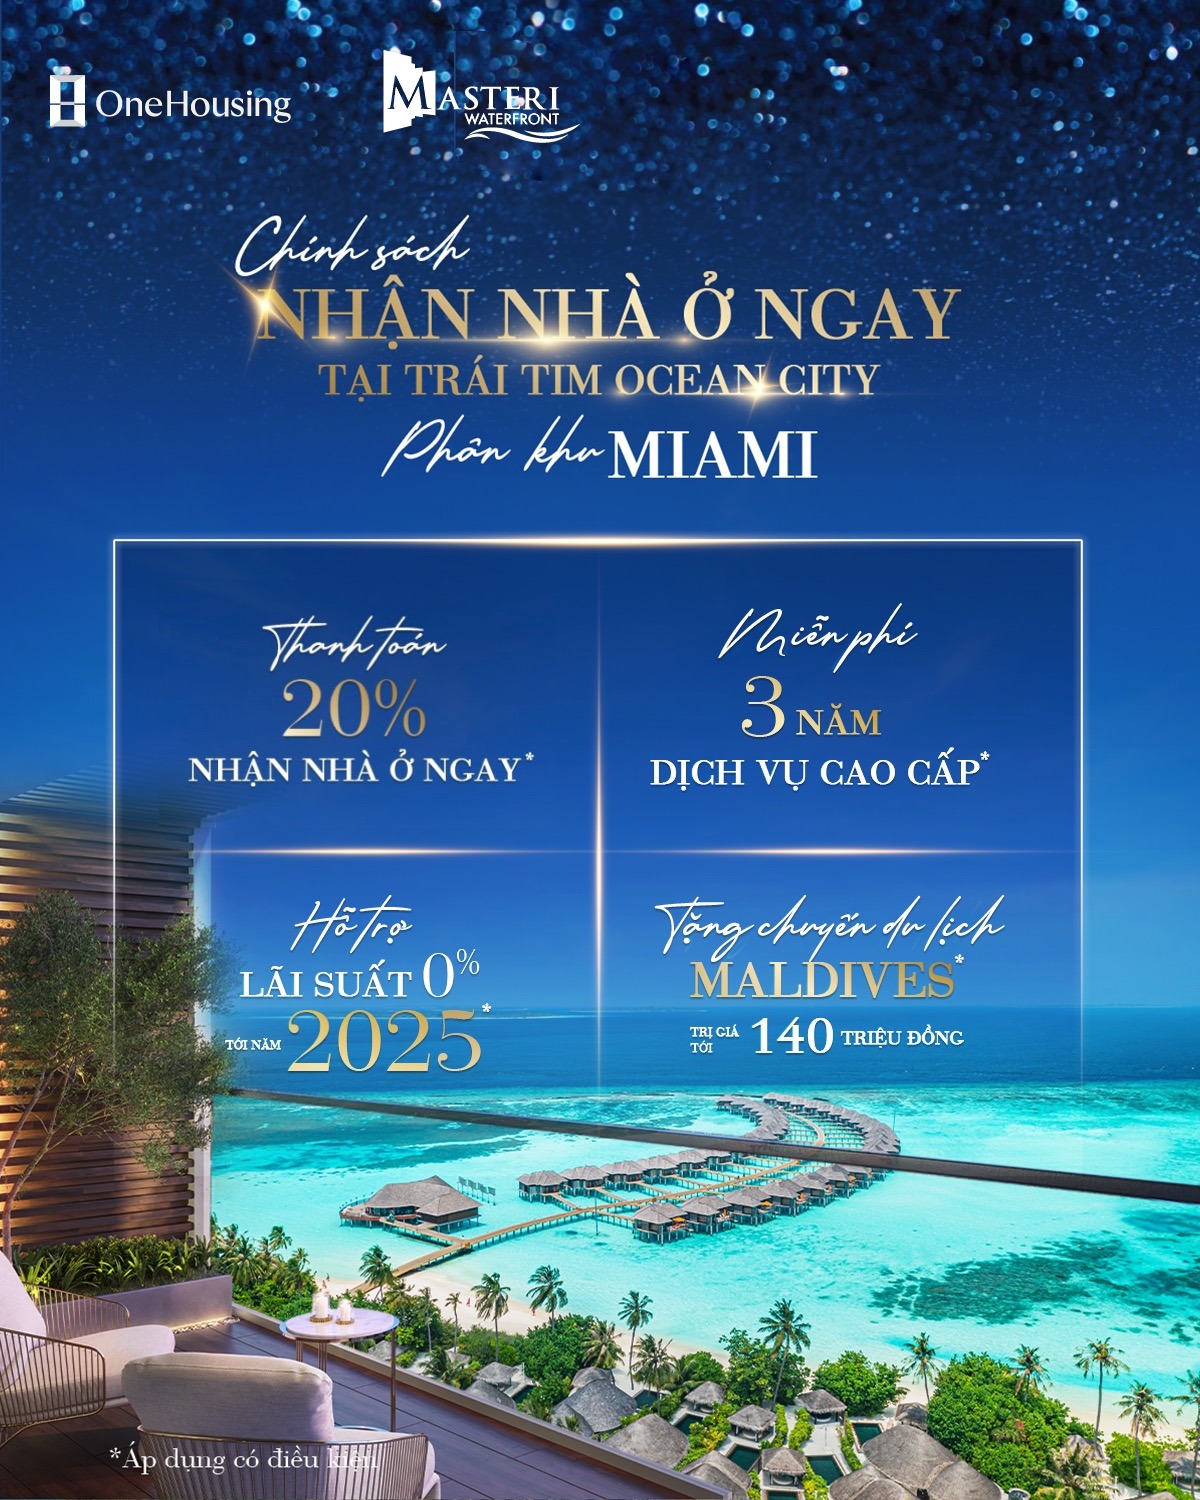 Về ở ngay tại Miami - trái tim Ocean City và chớp cơ hội du lịch tại thiên đường biển Maldives